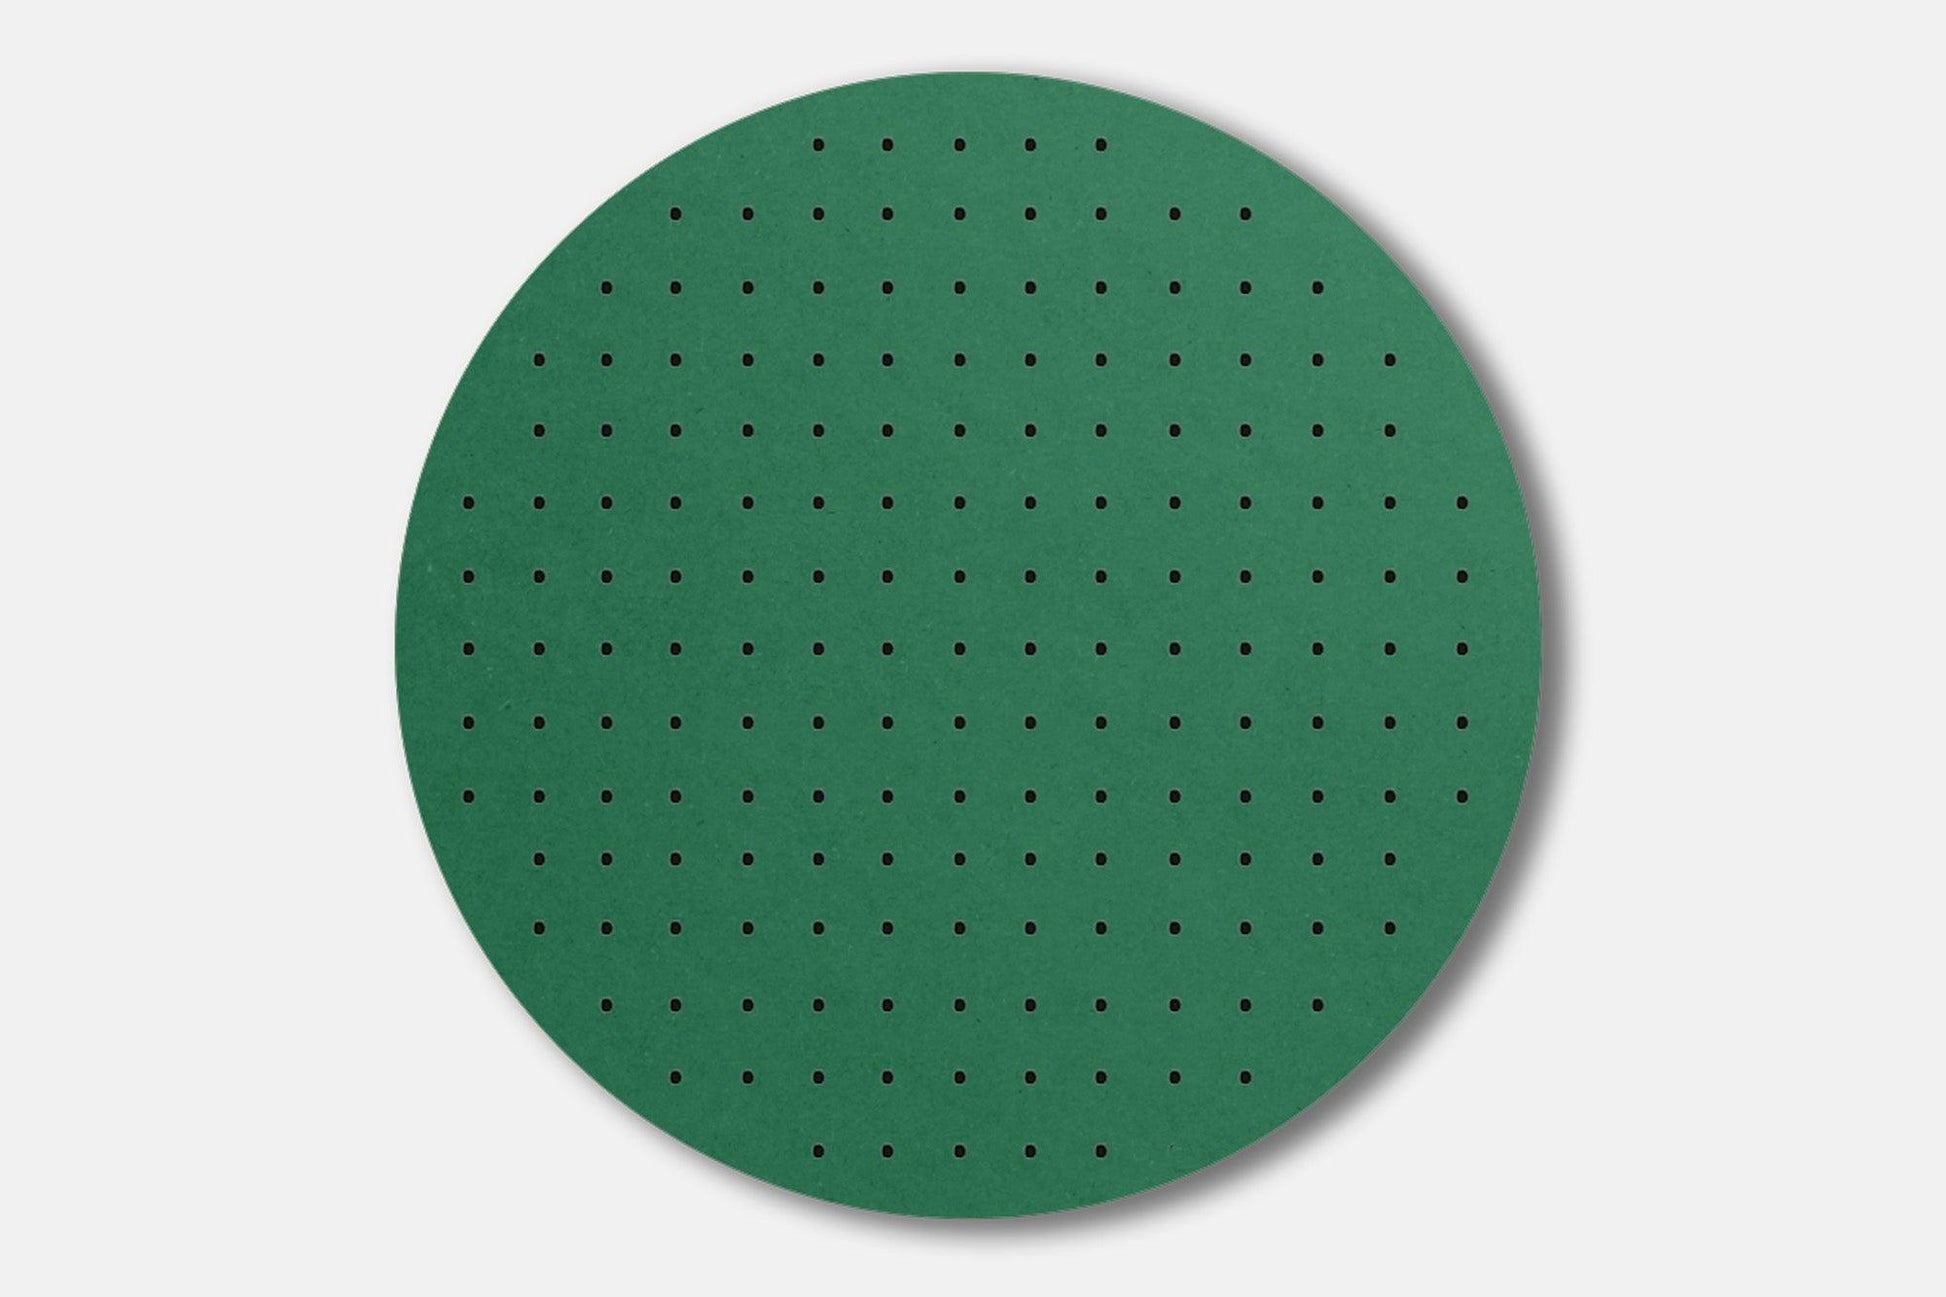 Panneau perforé - Pegboard Circulaire en bois - Diamètre 48 cm - Valch -  Quark